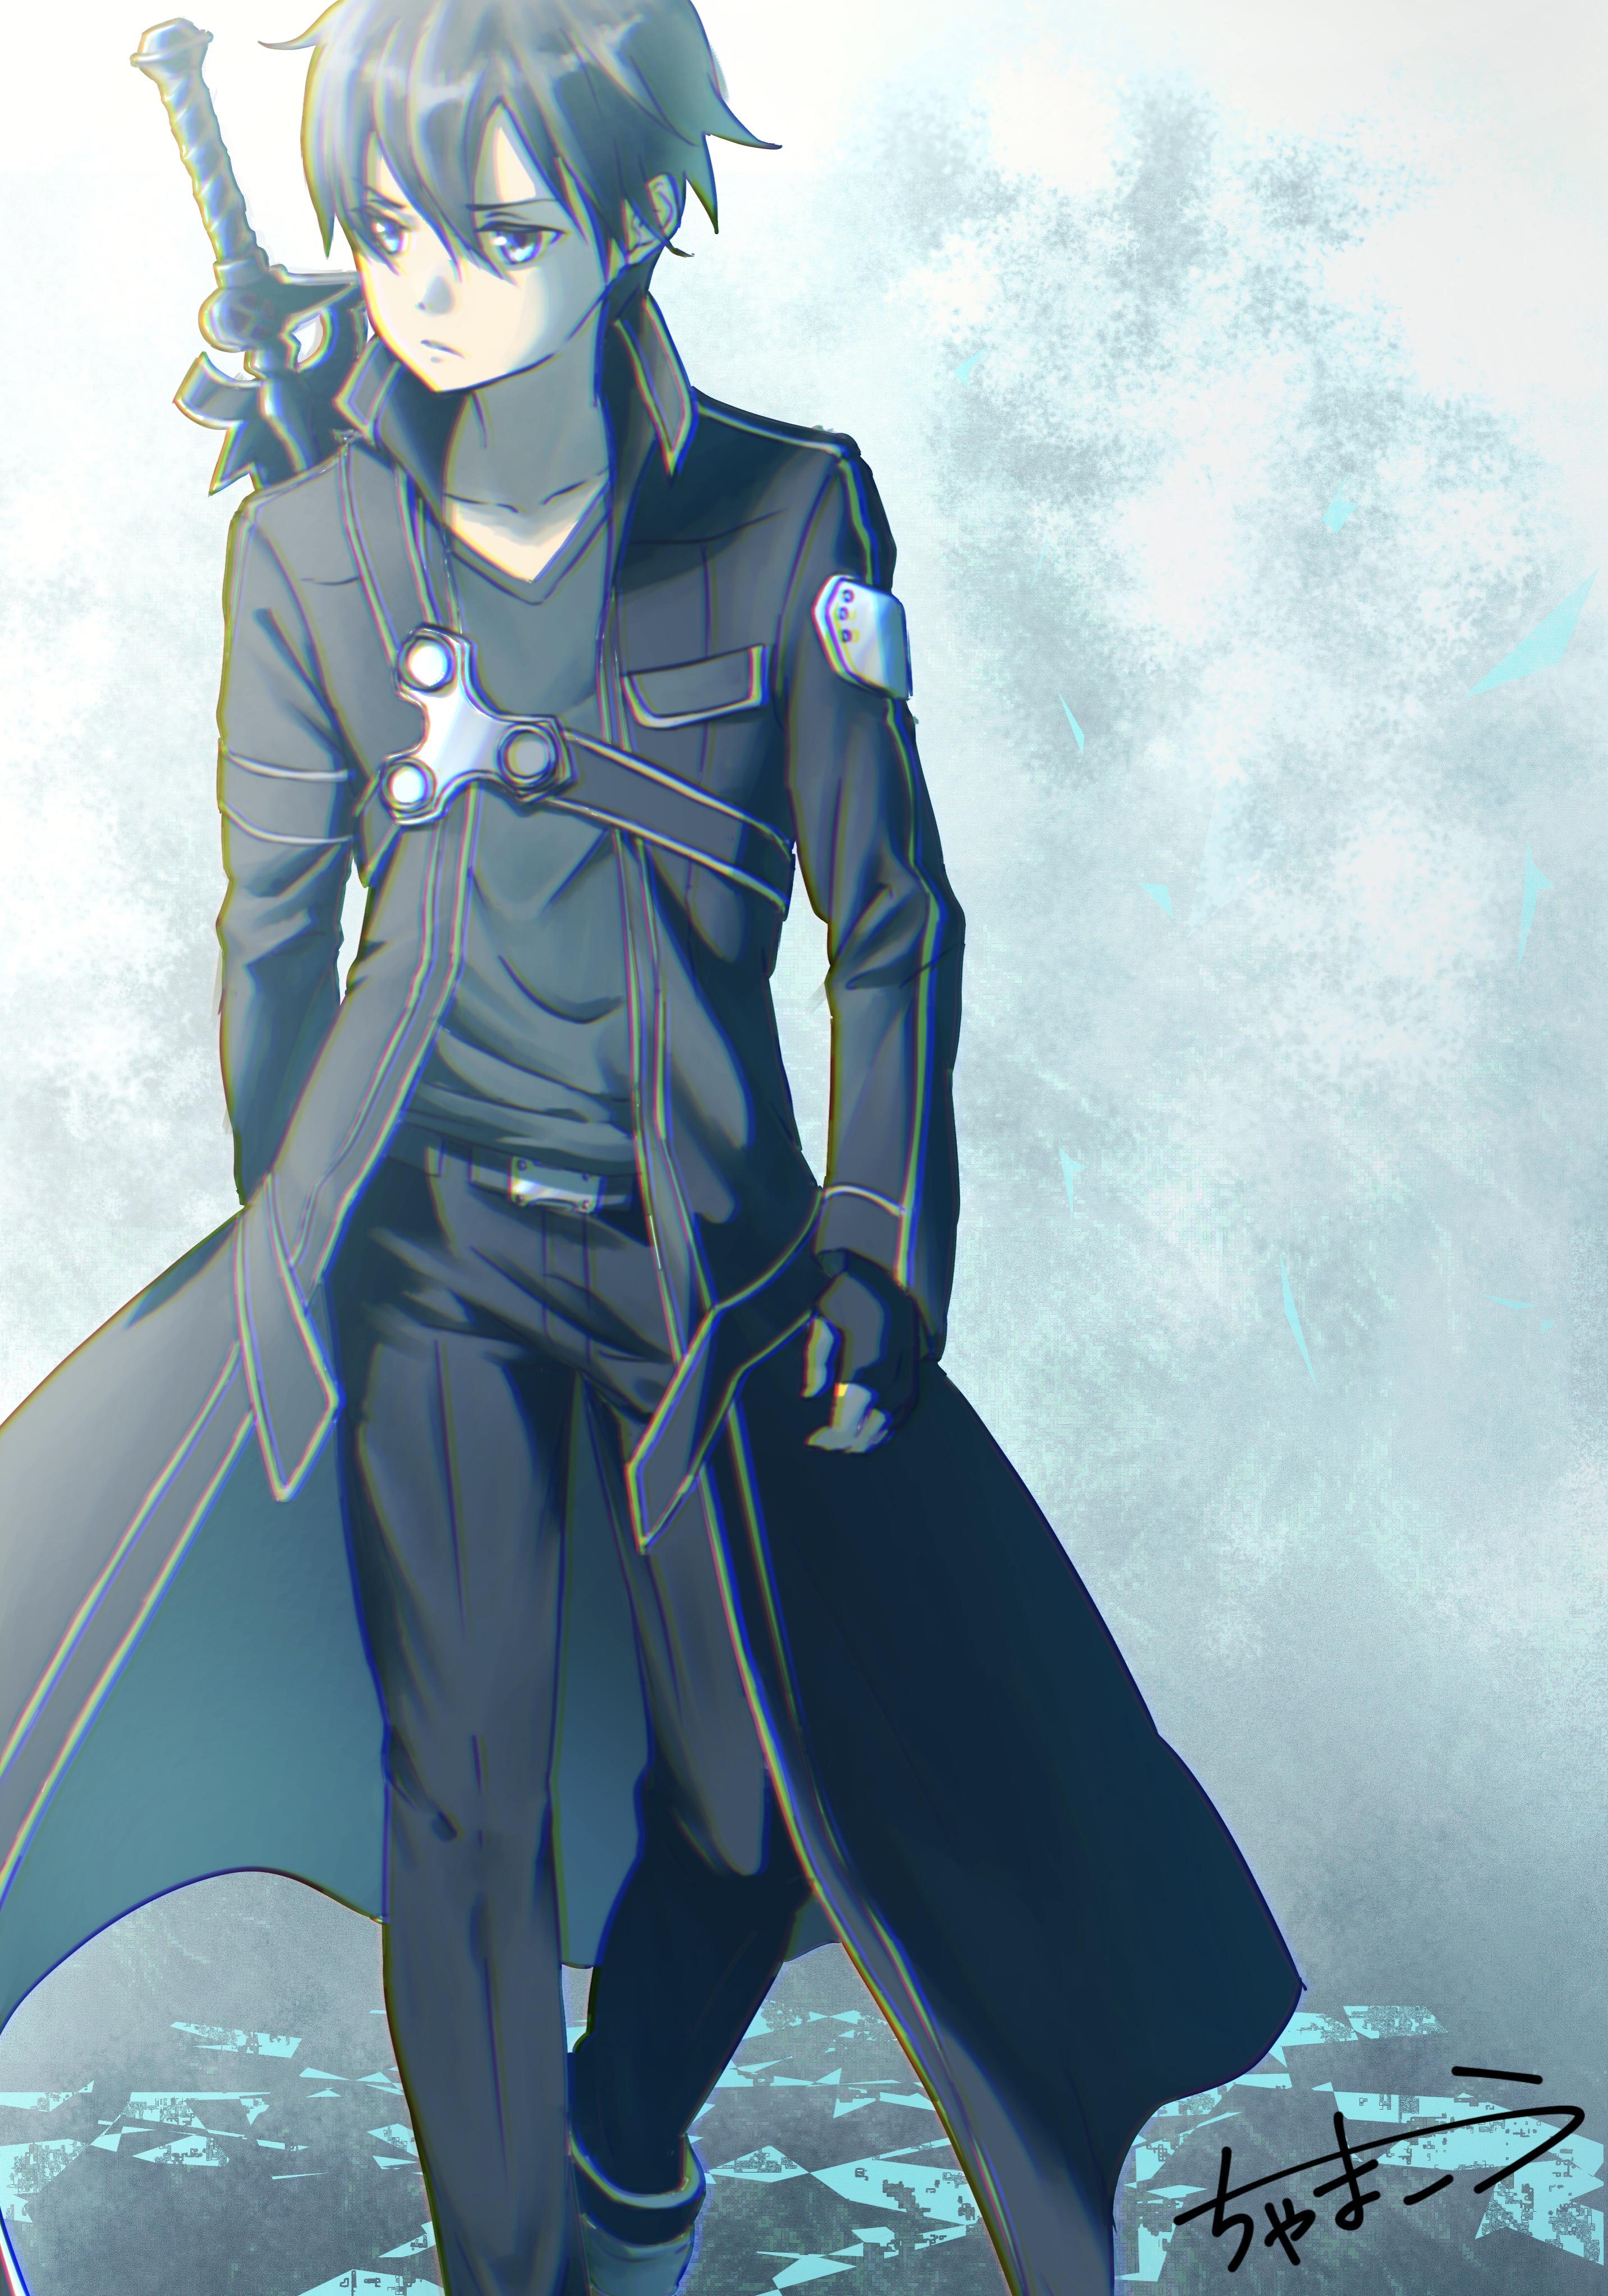 Hình Kirito áo choàng dài đeo kiếm sau lưng trông rất lãng tử